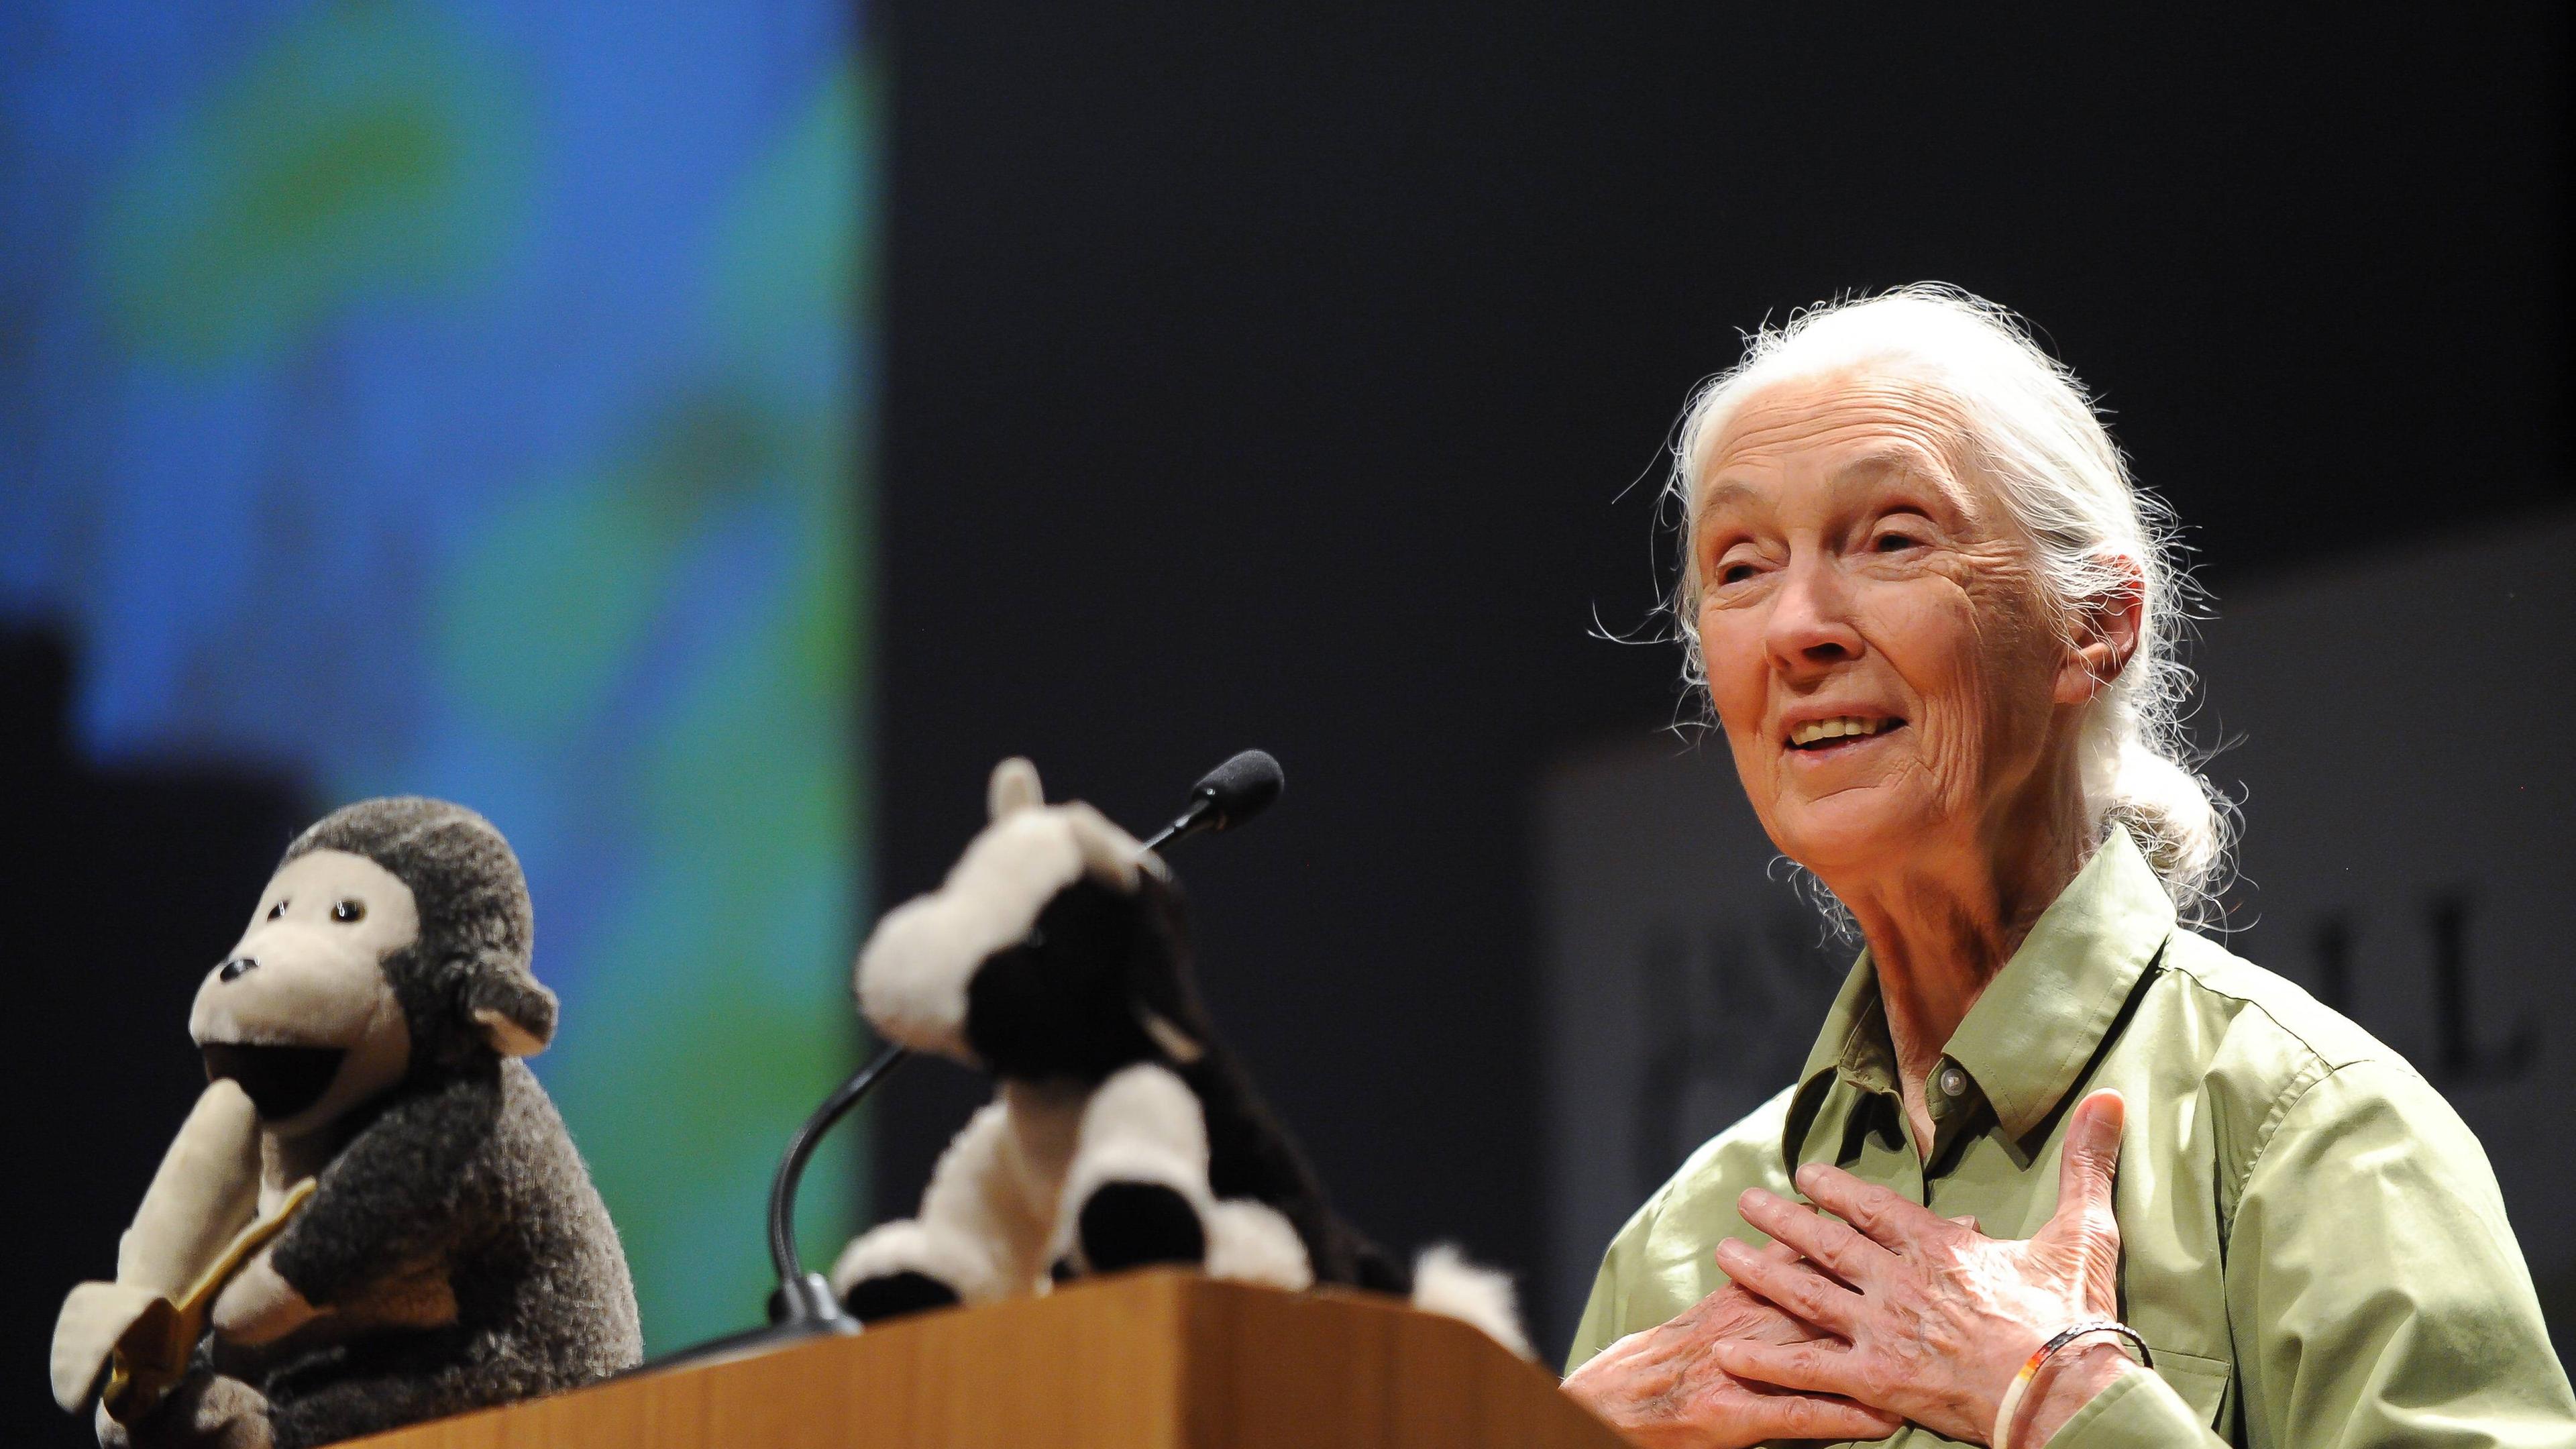 Jane Goodall steht an einem Rednerpult